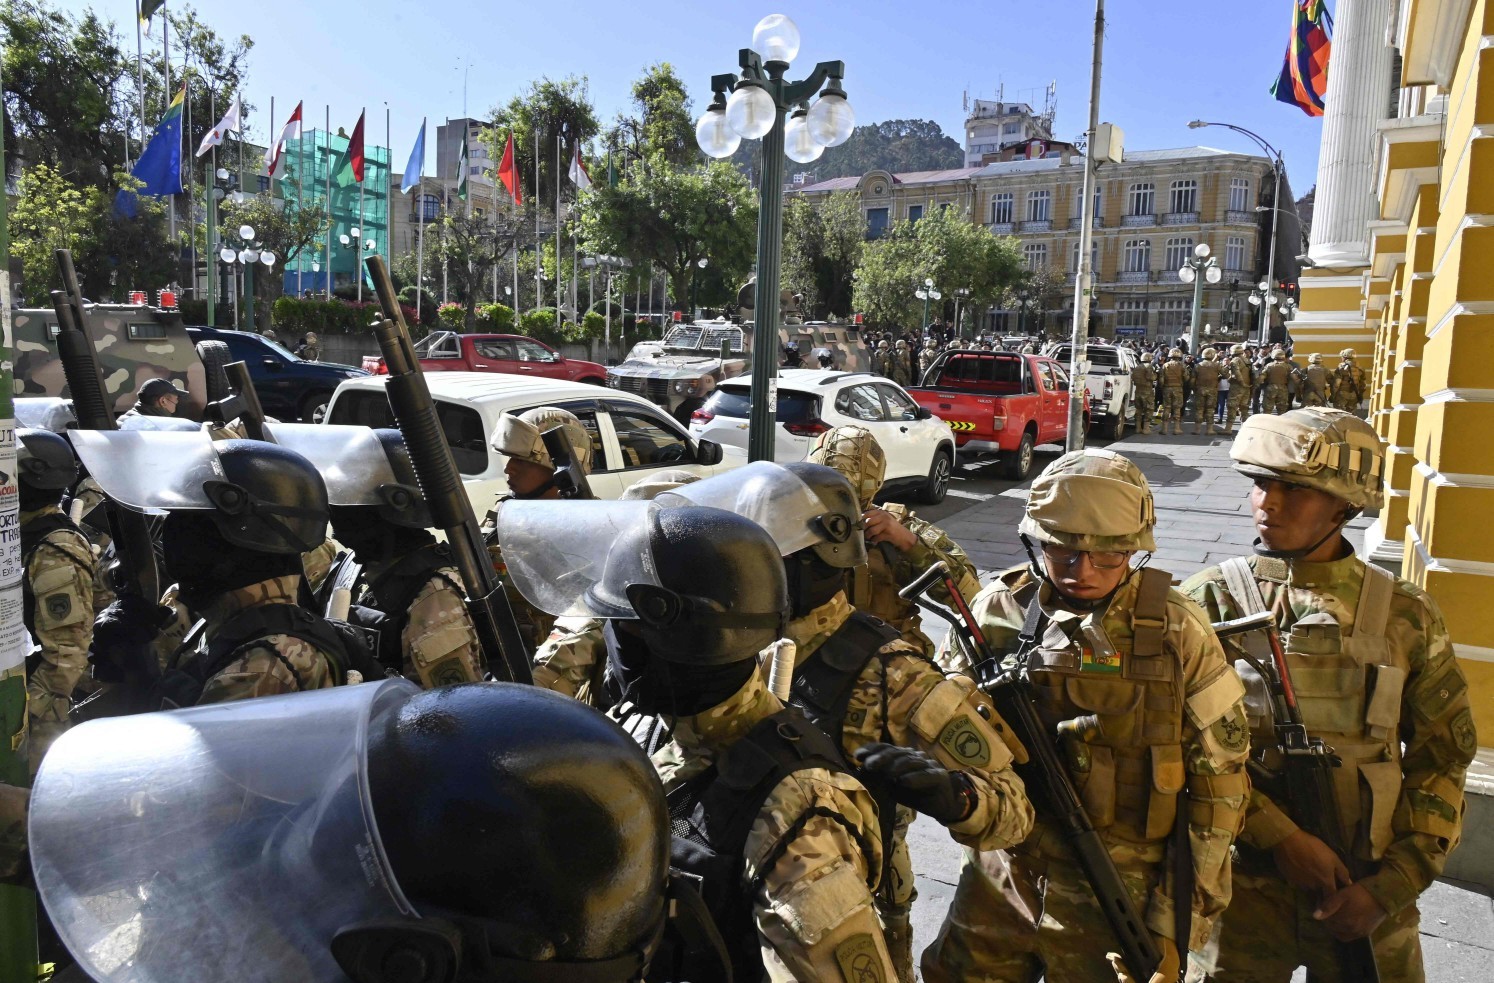 Tropas e tanques militares tomam praça em frente à sede do governo da Bolívia, em La Paz — Foto: AIZAR RALDES / AFP